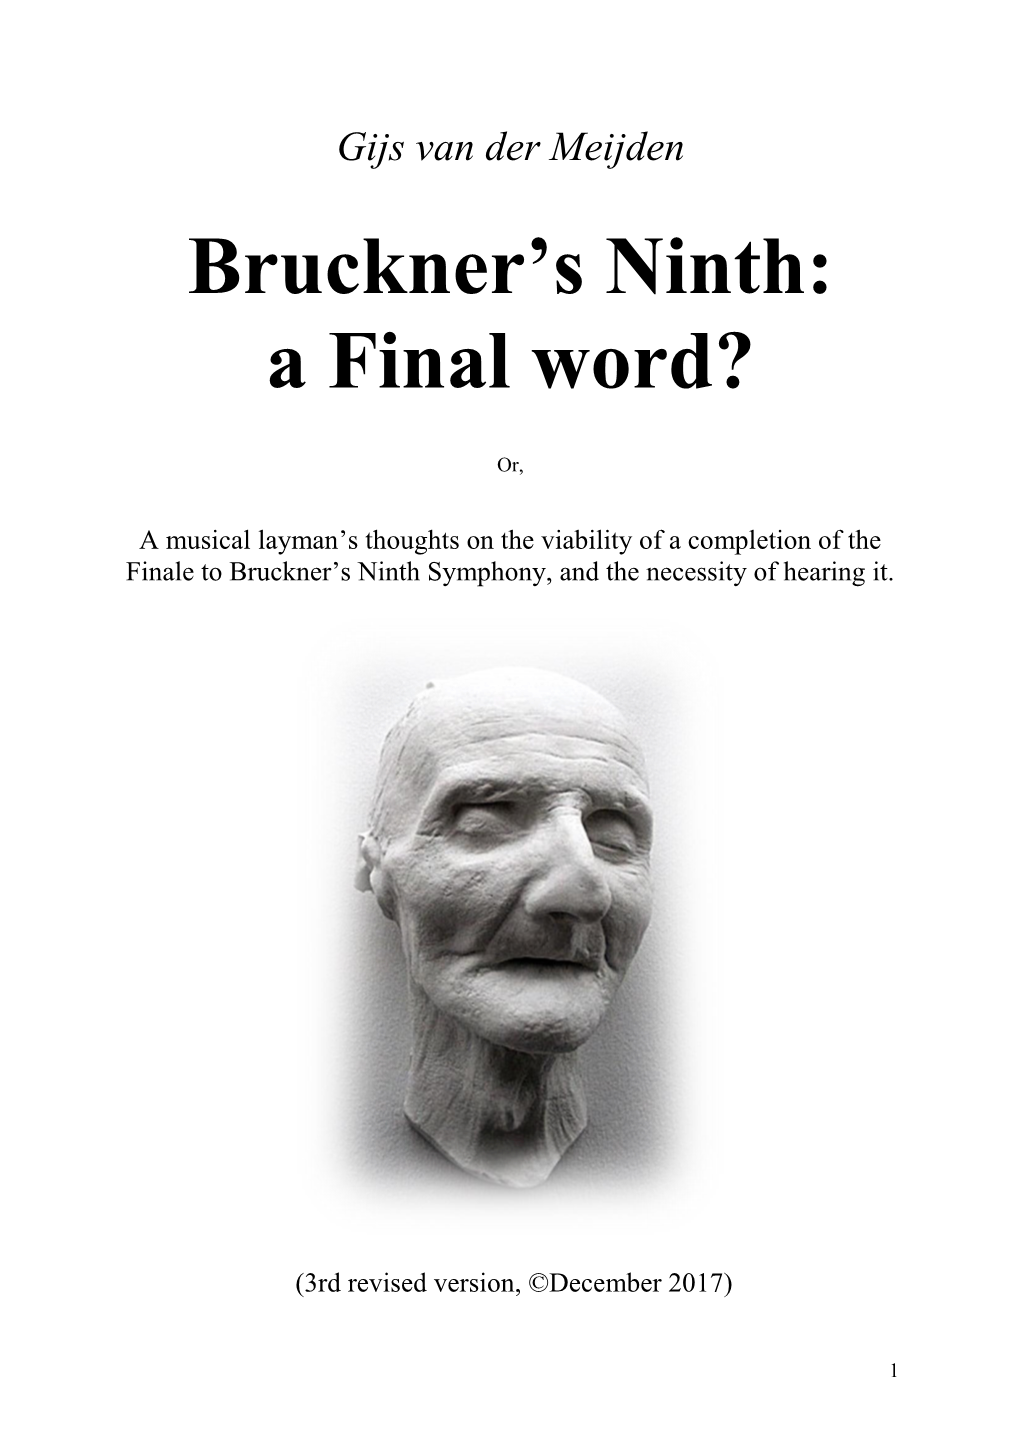 Bruckner's Ninth: a Final Word?